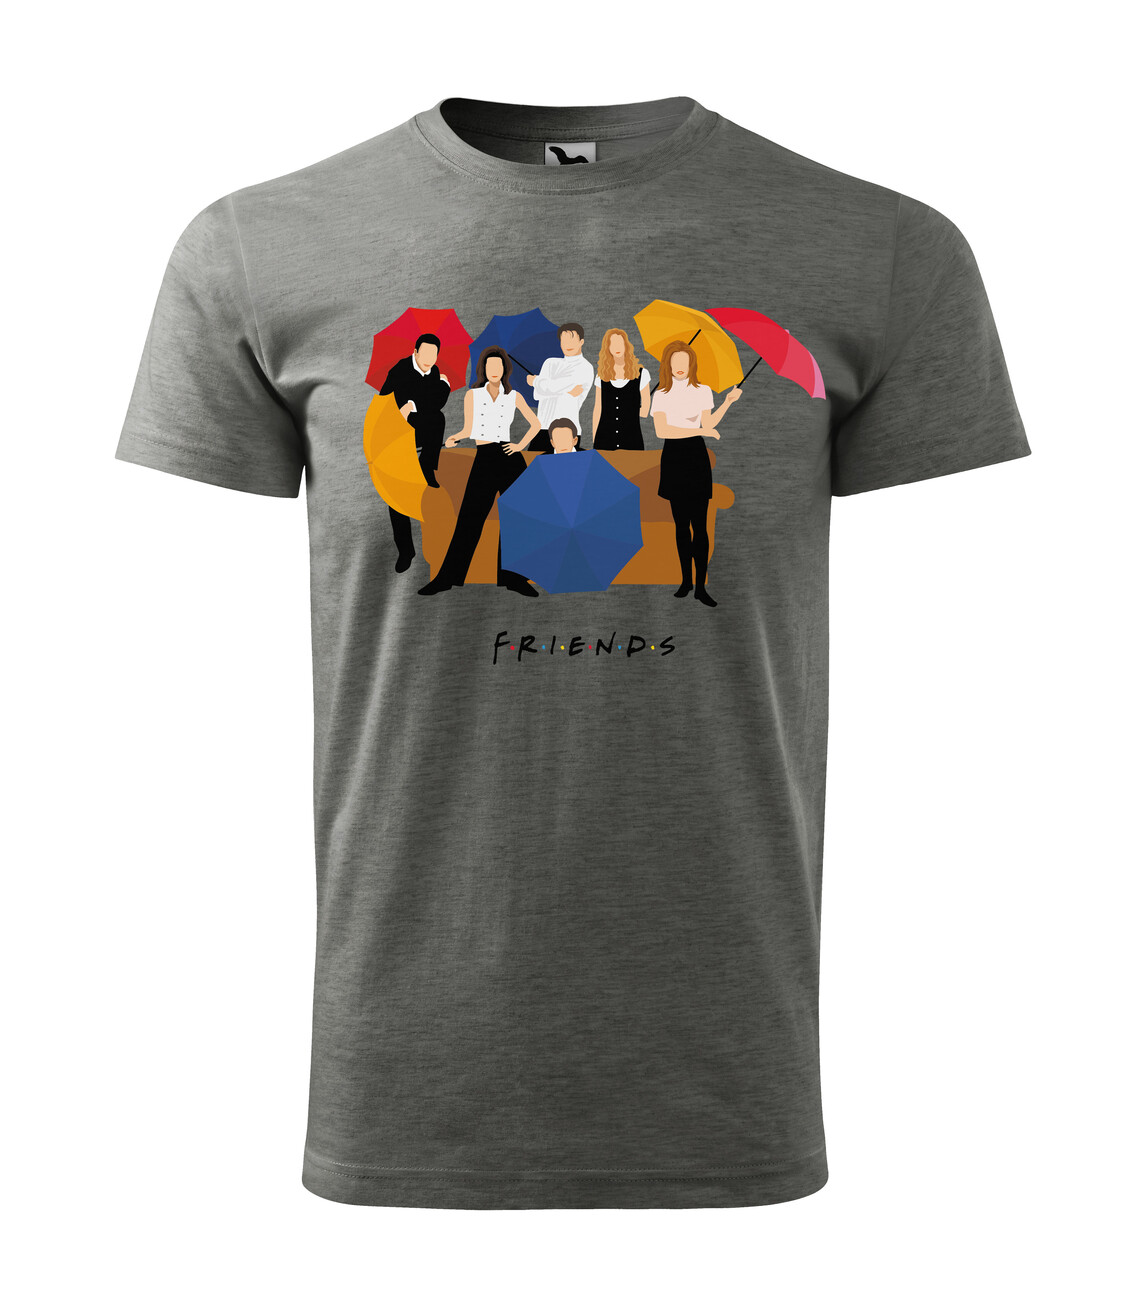 Friends Logo T-Shirt, Official Friends Merch Europe